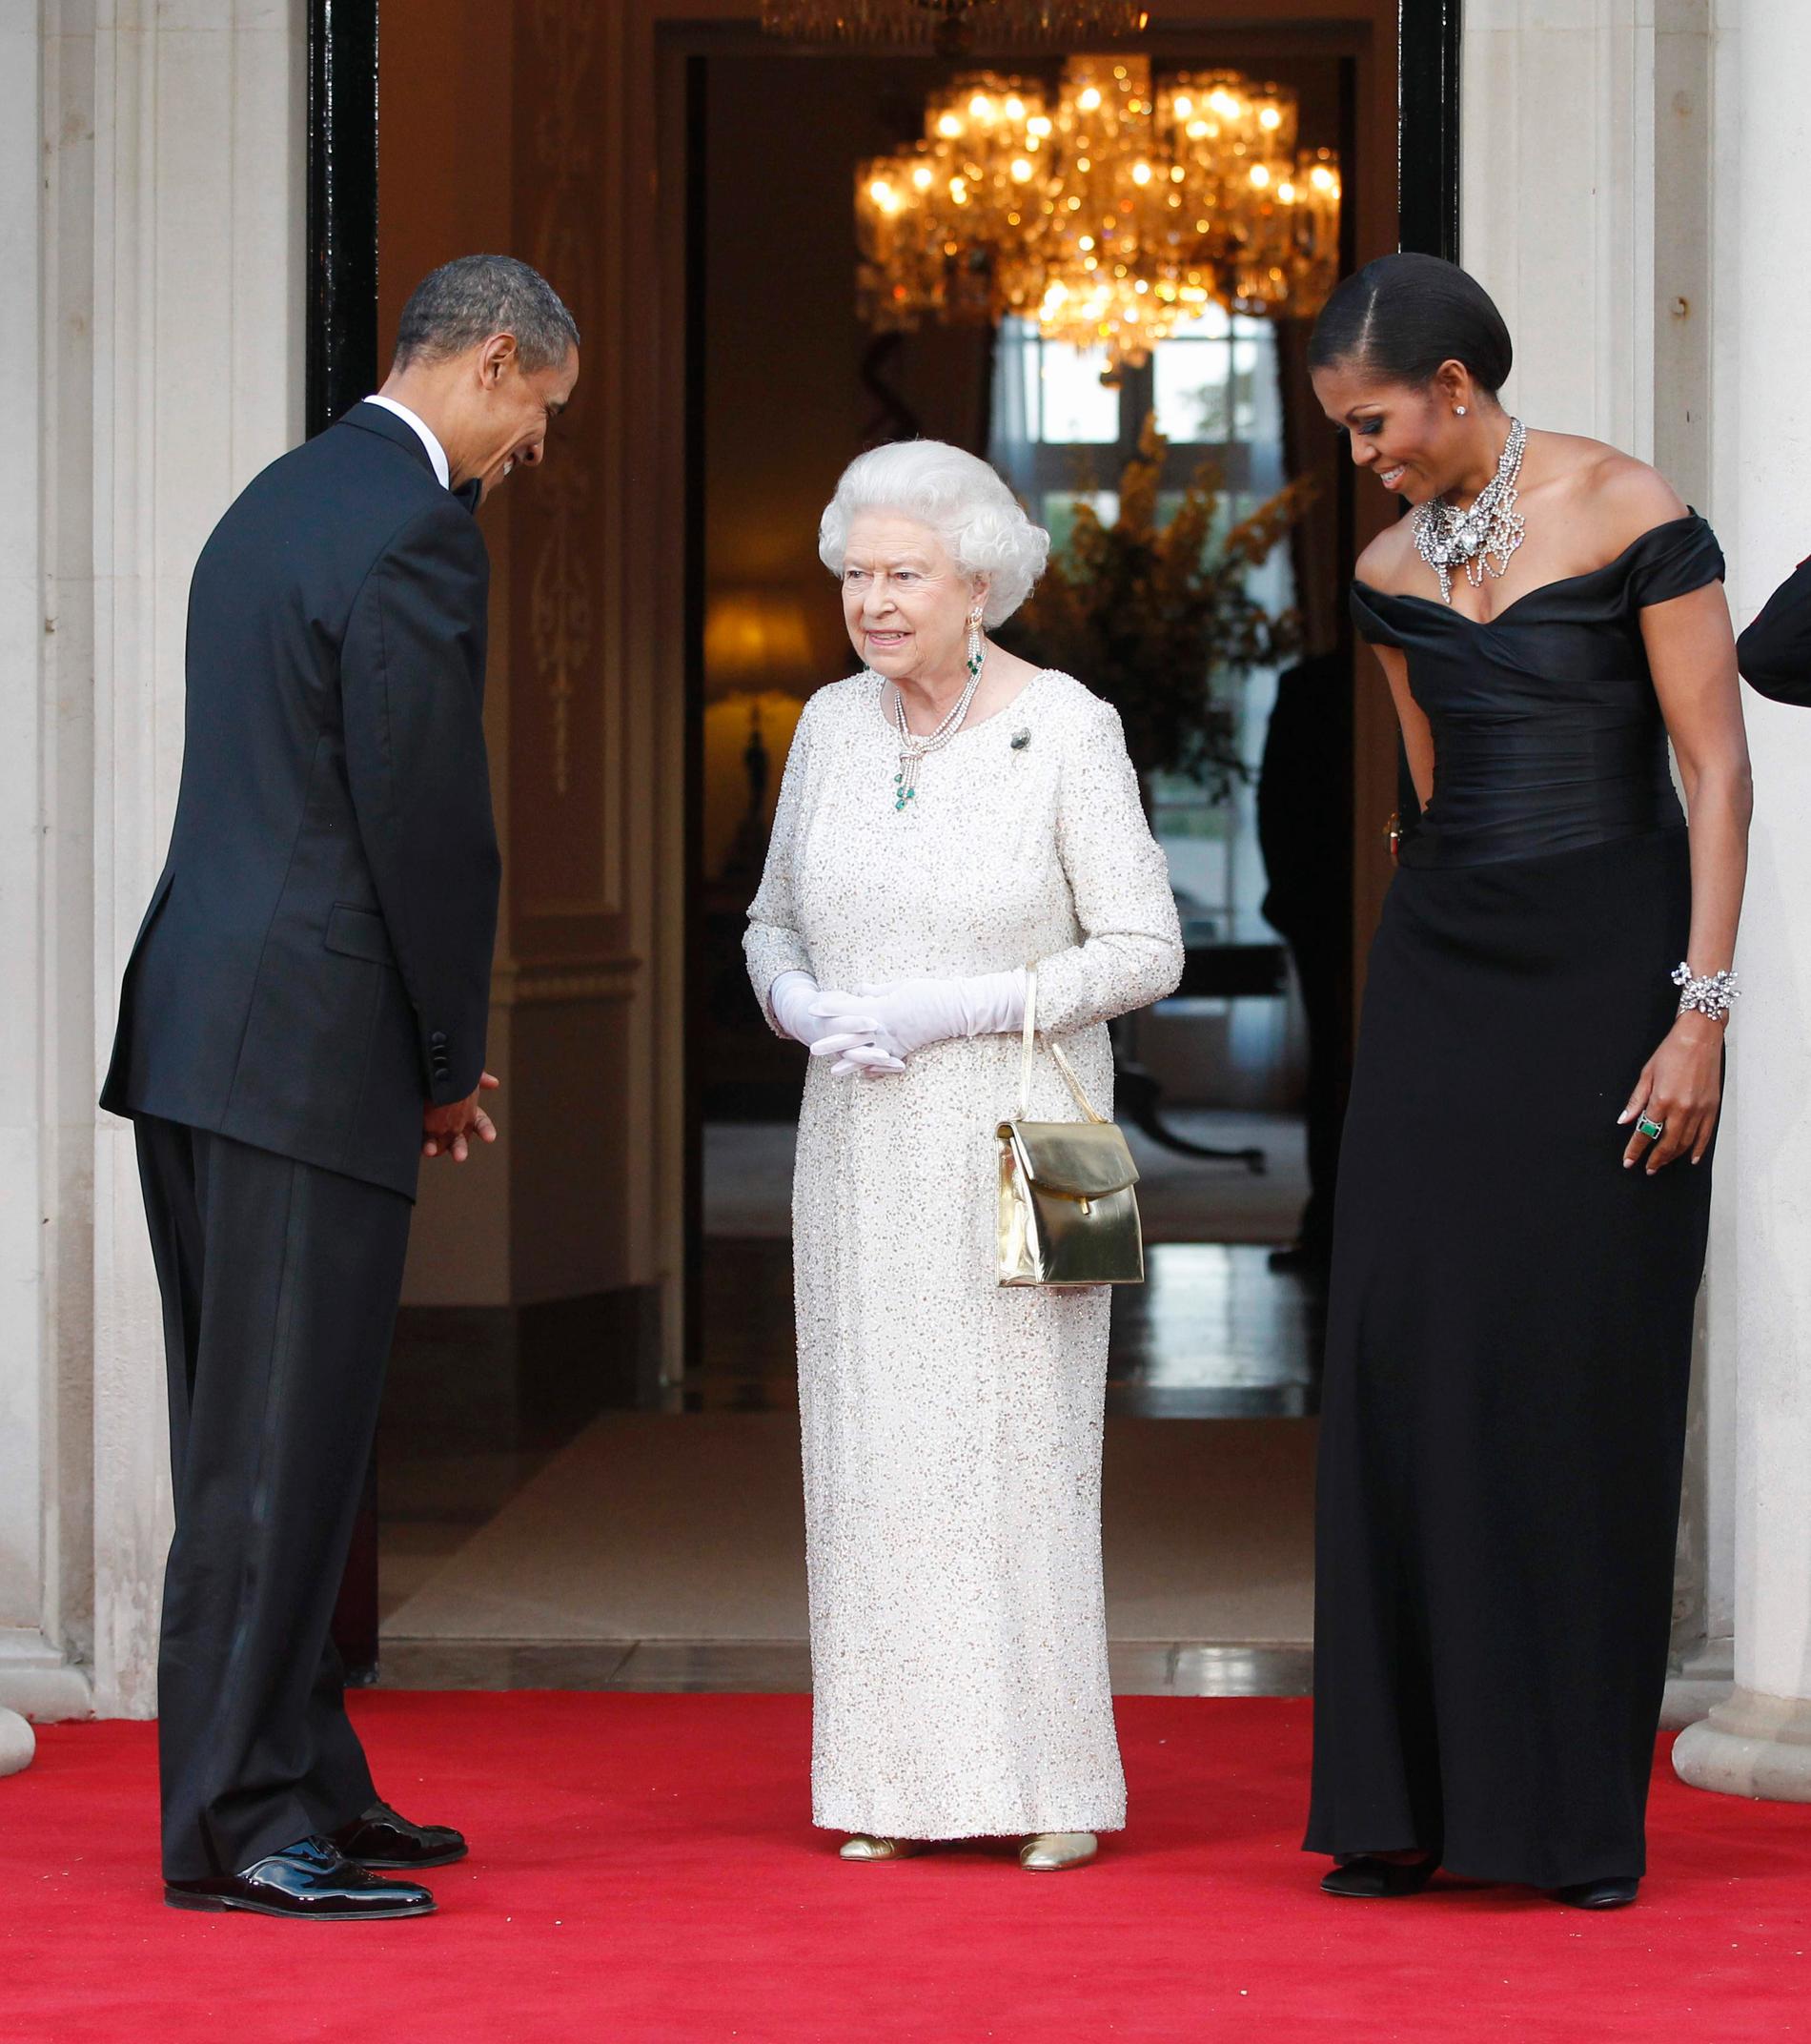 Presidentparet Barack och Michelle Obama under statsbesöket i London i maj 2011. Drottning Elizabeth bär då broschen hon  fått av presidentparet. Broschen hade de köpt till drottningen för egna pengar och gett henne vid sidan av de officiella gåvorna.  